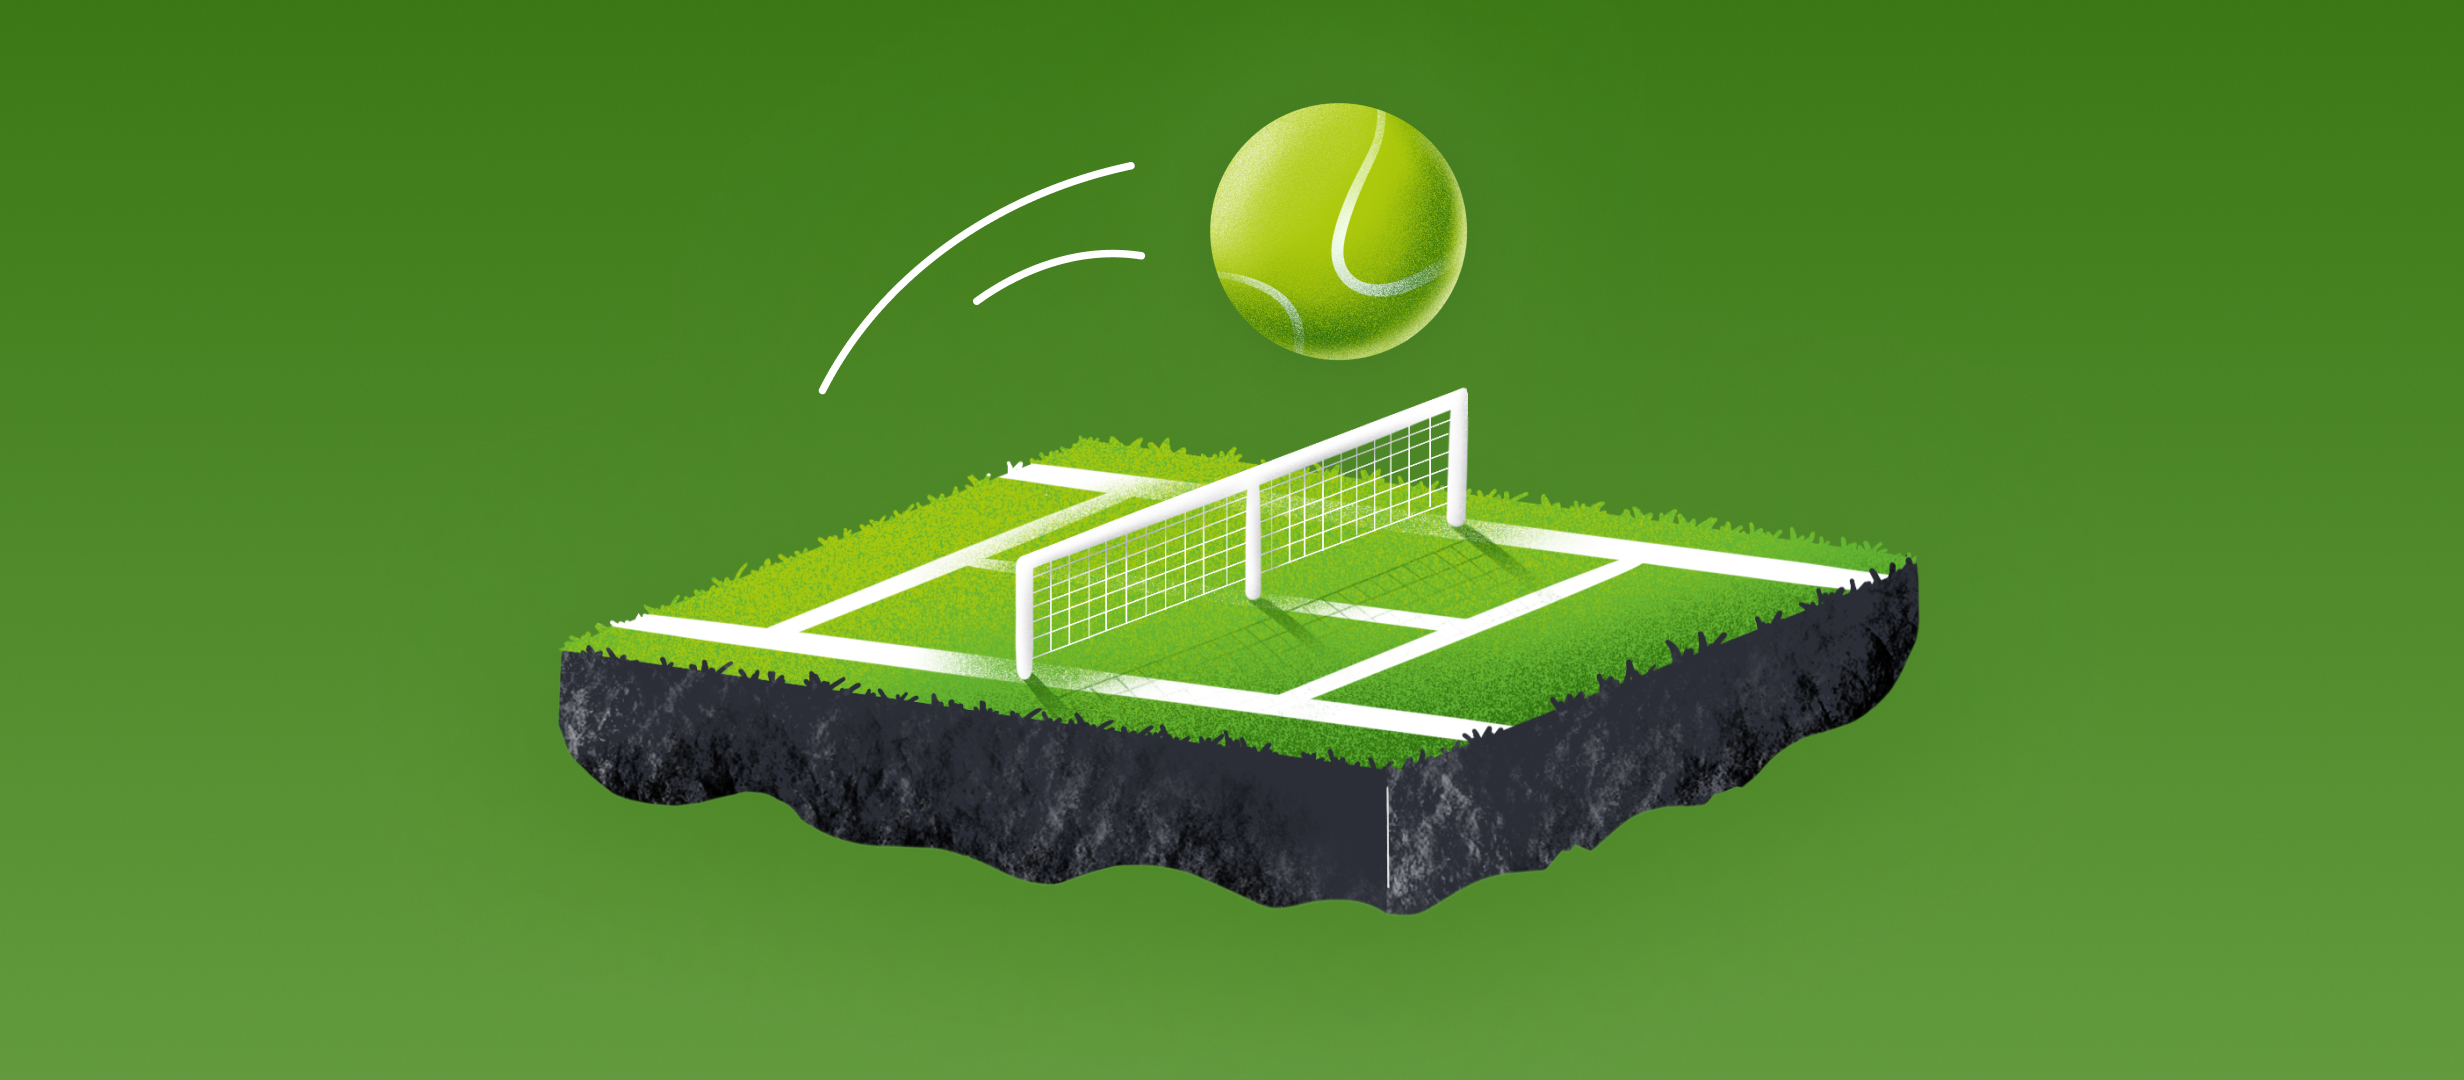 La hierba es la superficie más específica en el tenis. ¿Cómo apostar en ella?